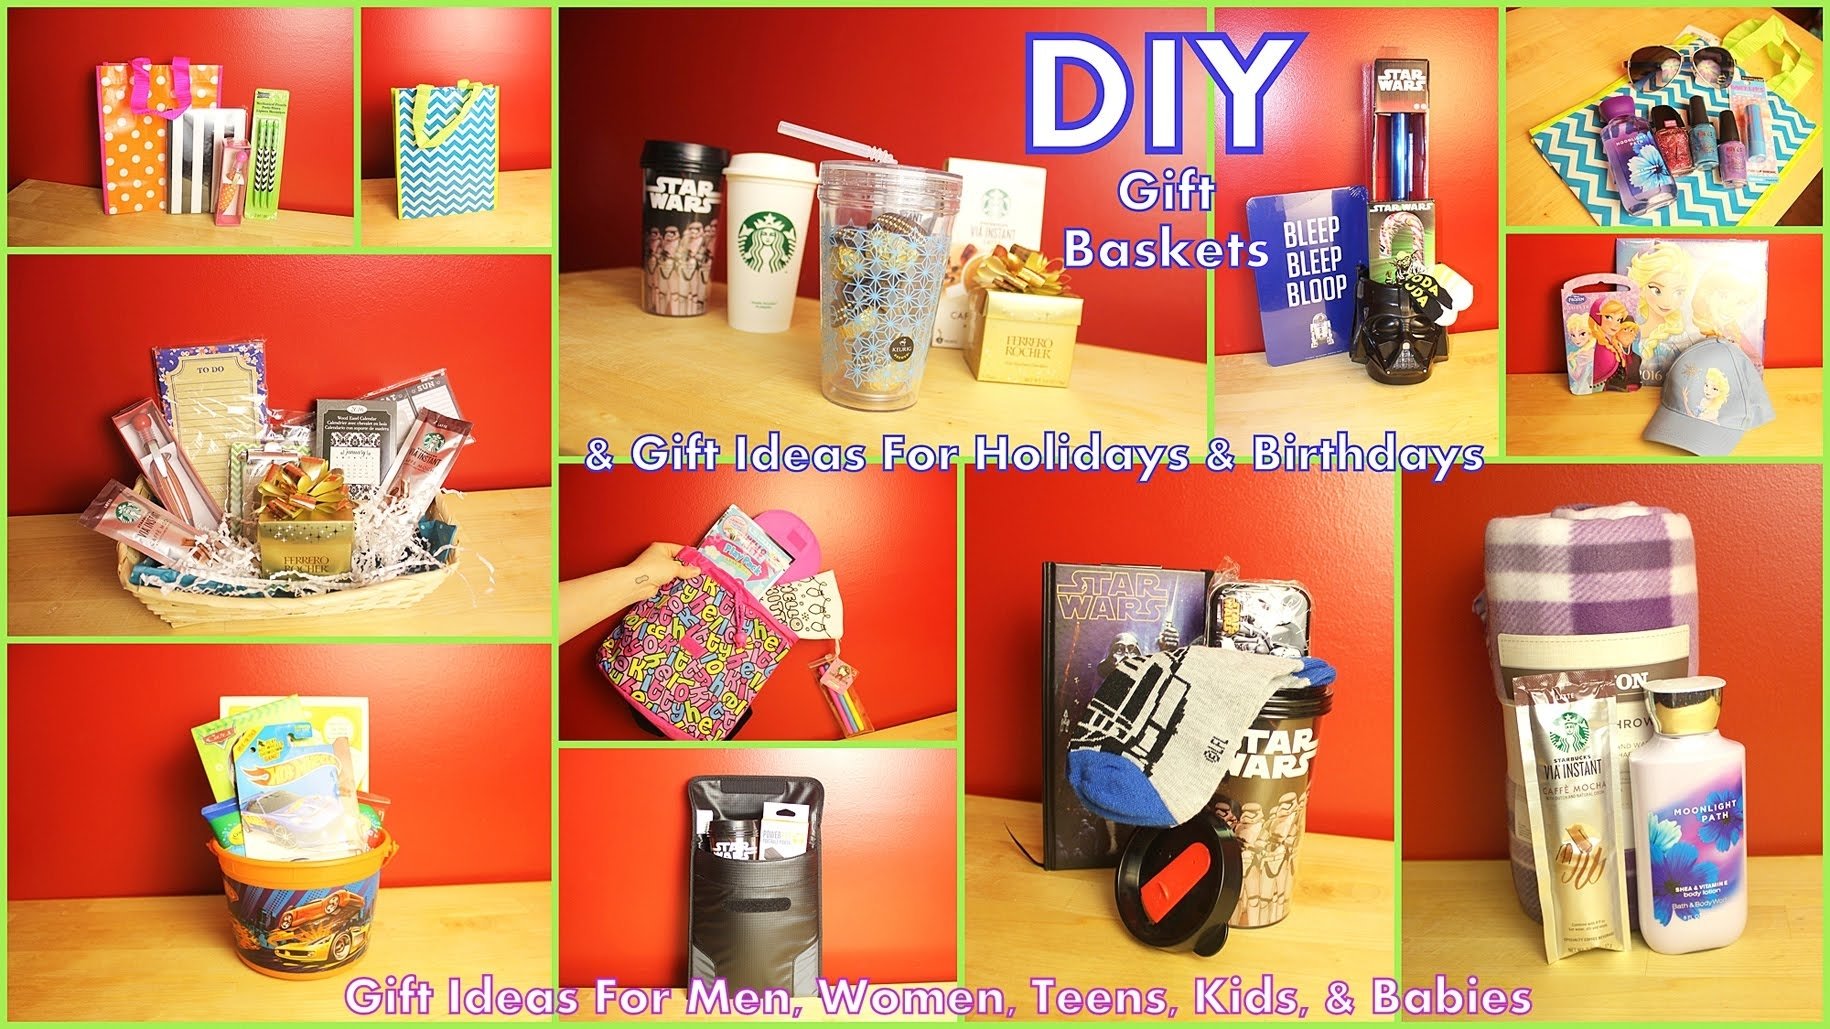 10 Nice Diy Gift Ideas For Men diy gift baskets gift ideas how to assemble for men women kids 4 2022